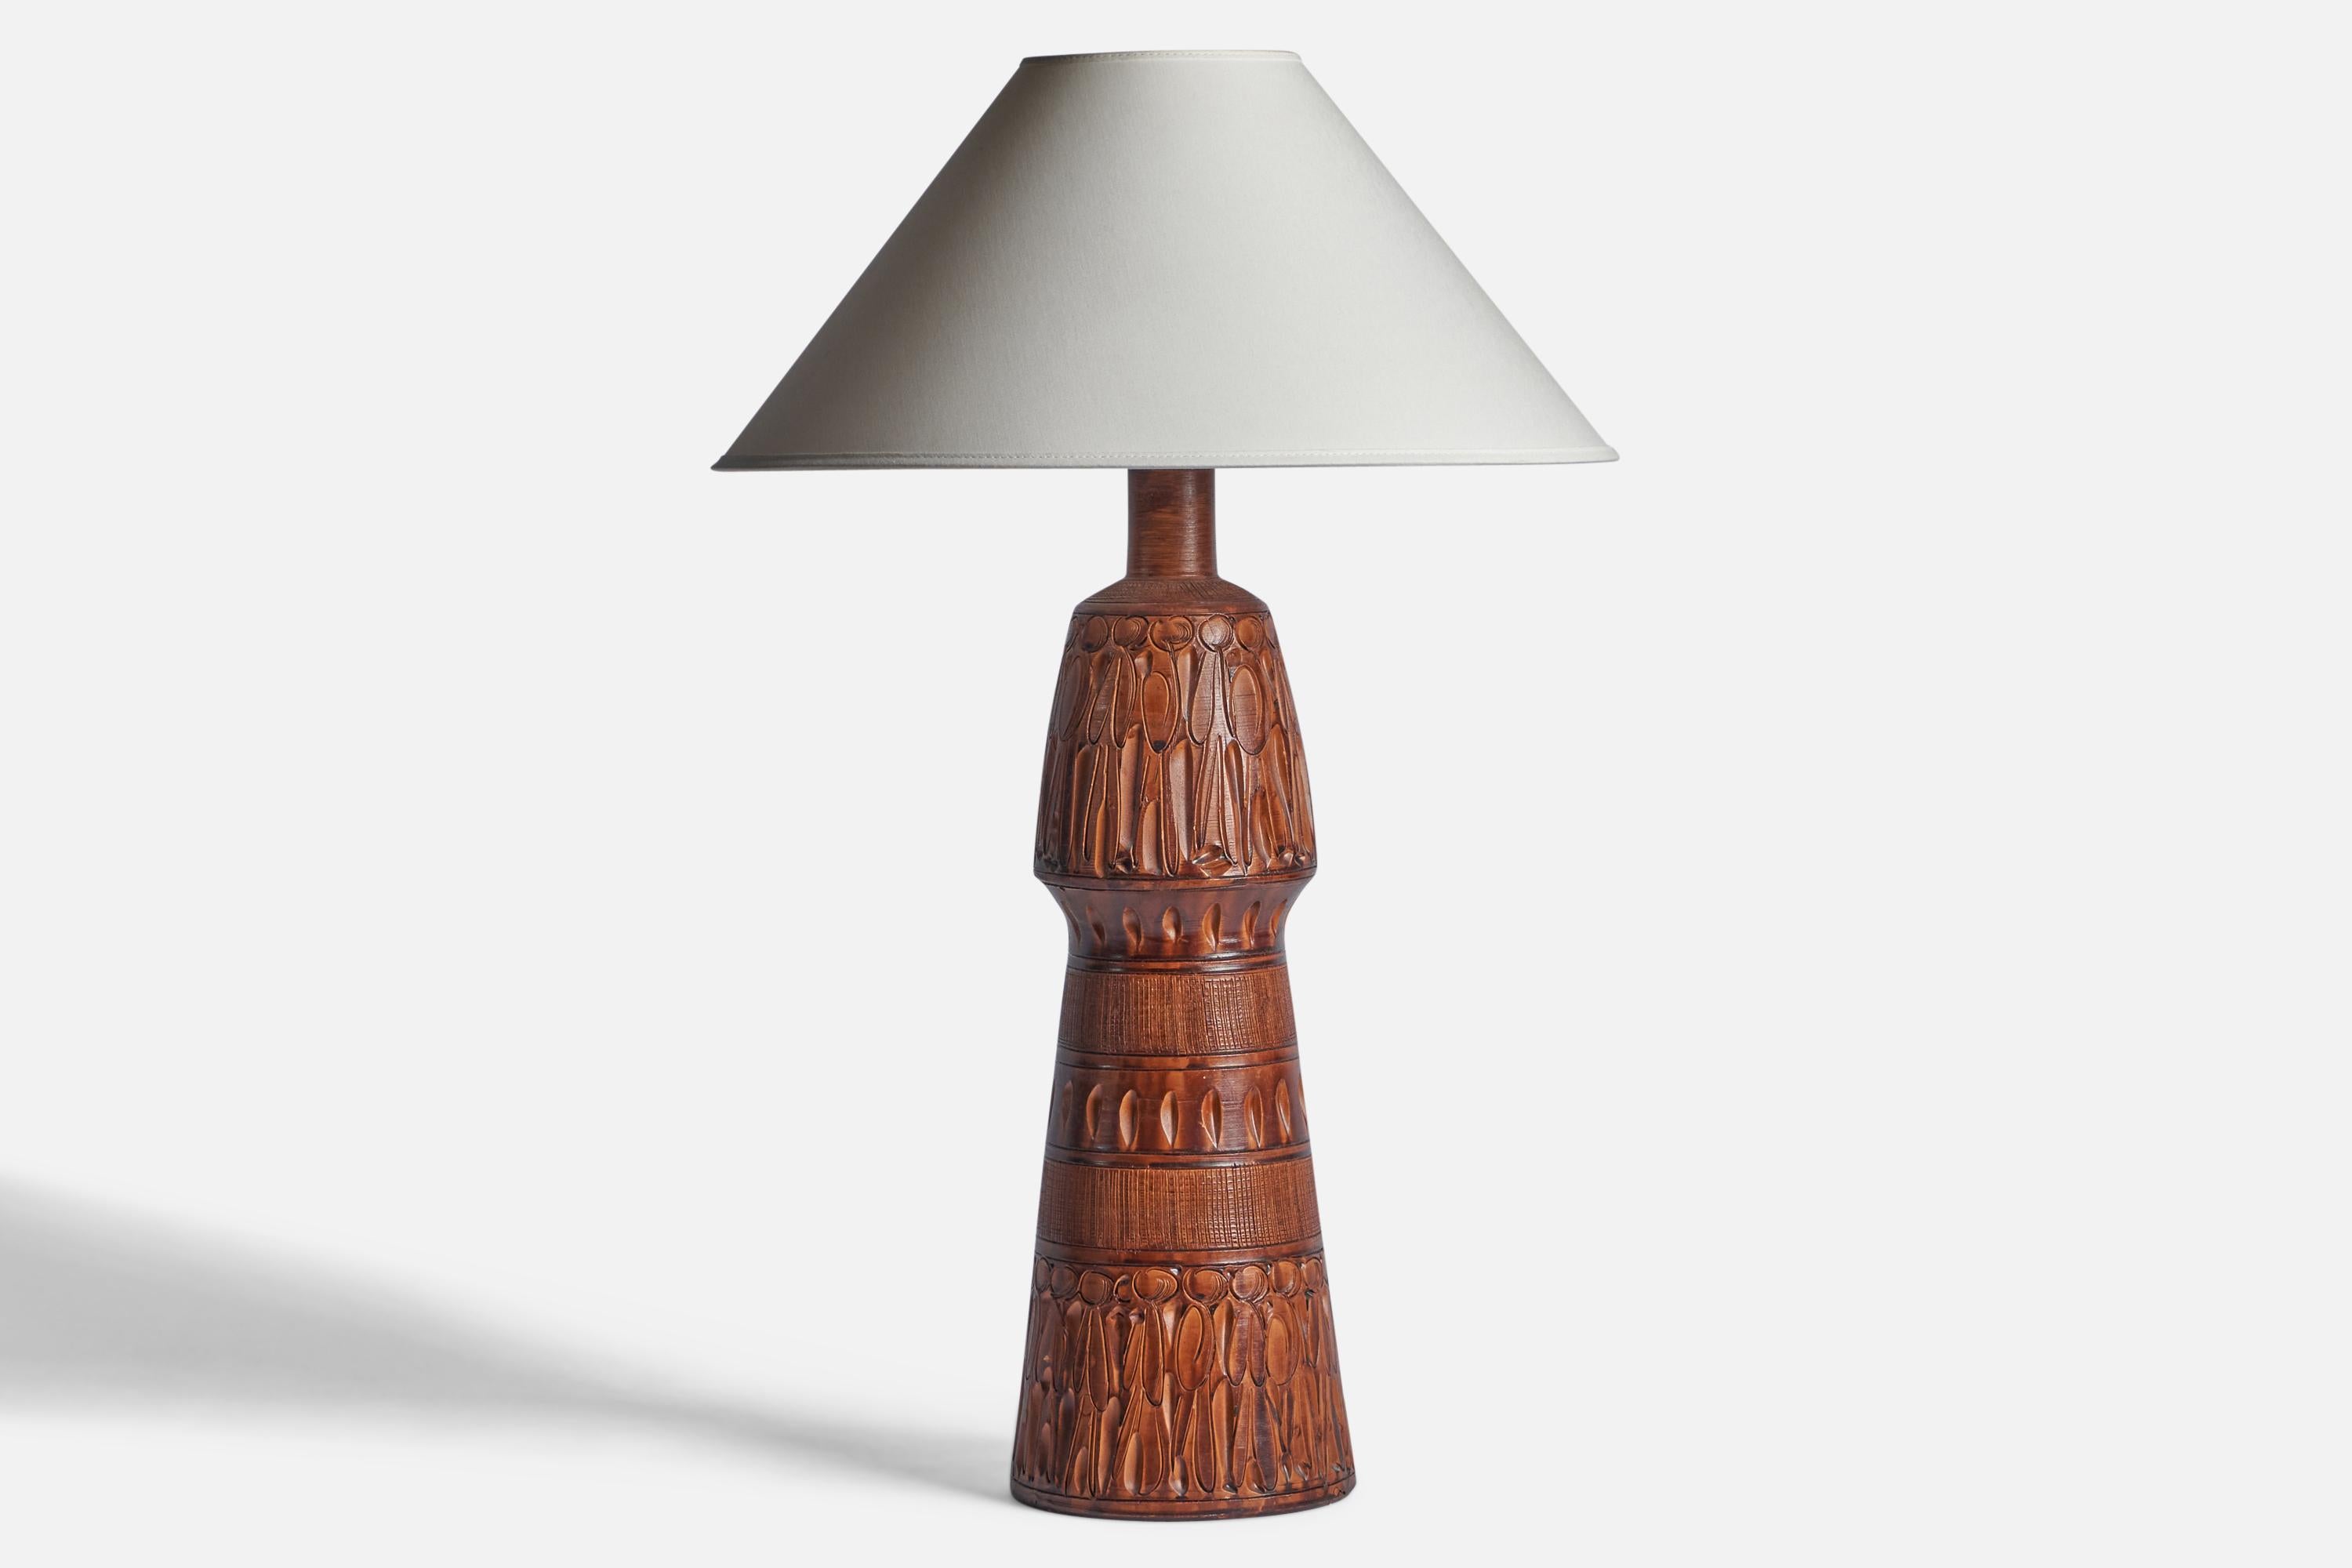 Importante lampe de table en céramique à glaçure brune et incisée, conçue et produite en Italie, C.I.C..

Dimensions de la lampe (pouces) : 21